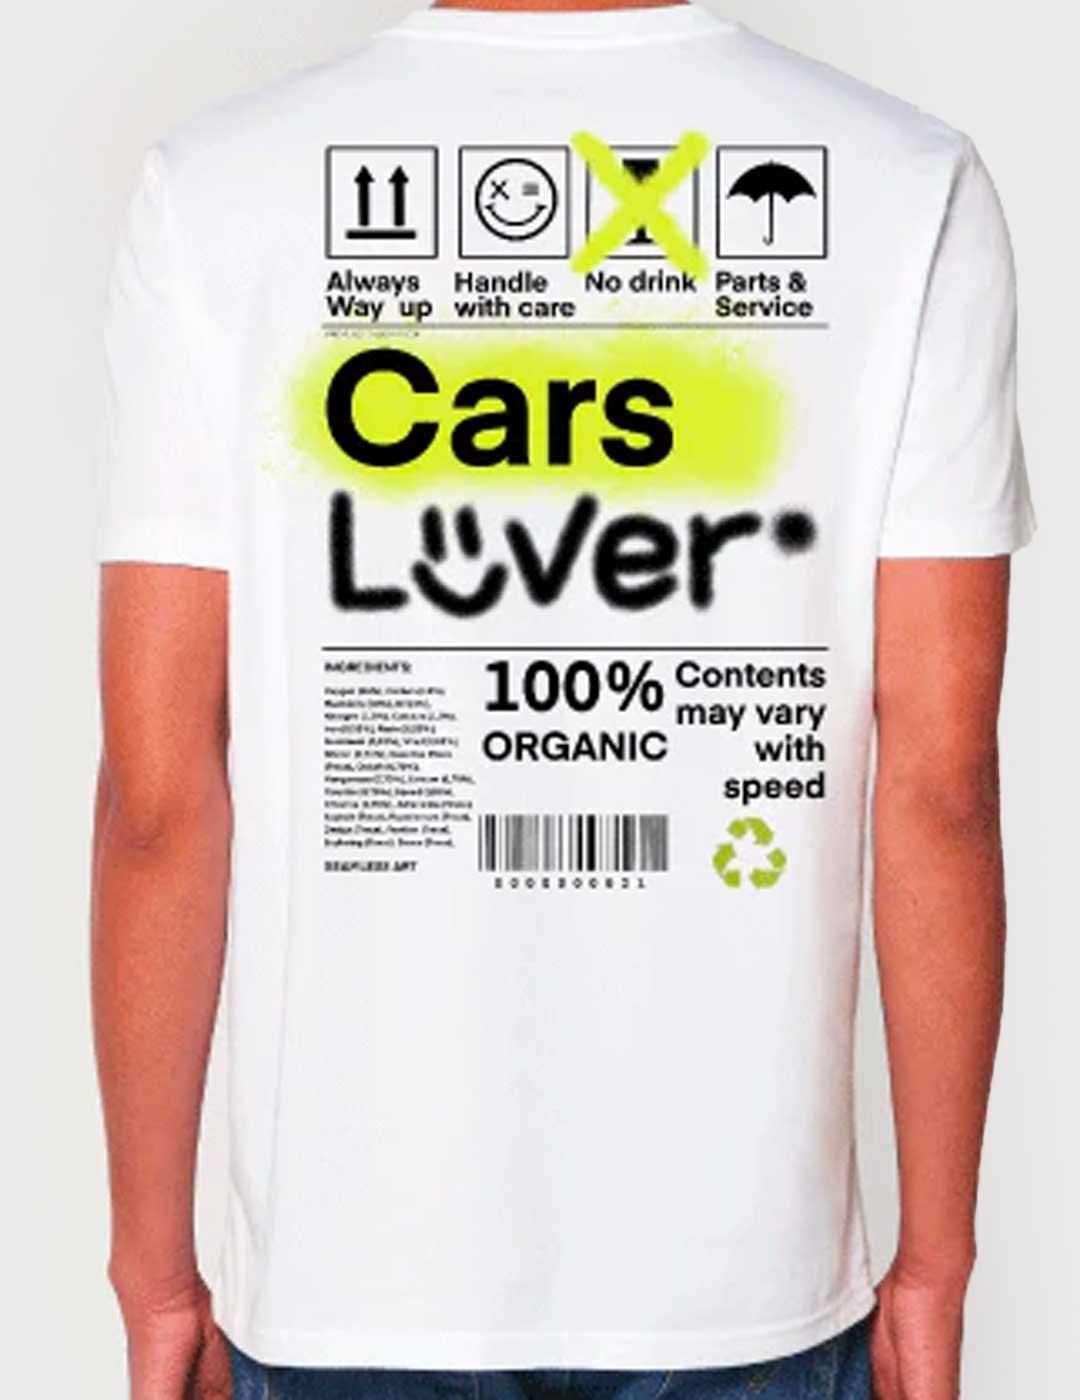 Camiseta Fika & Co Cars Lovers blanca para hombre